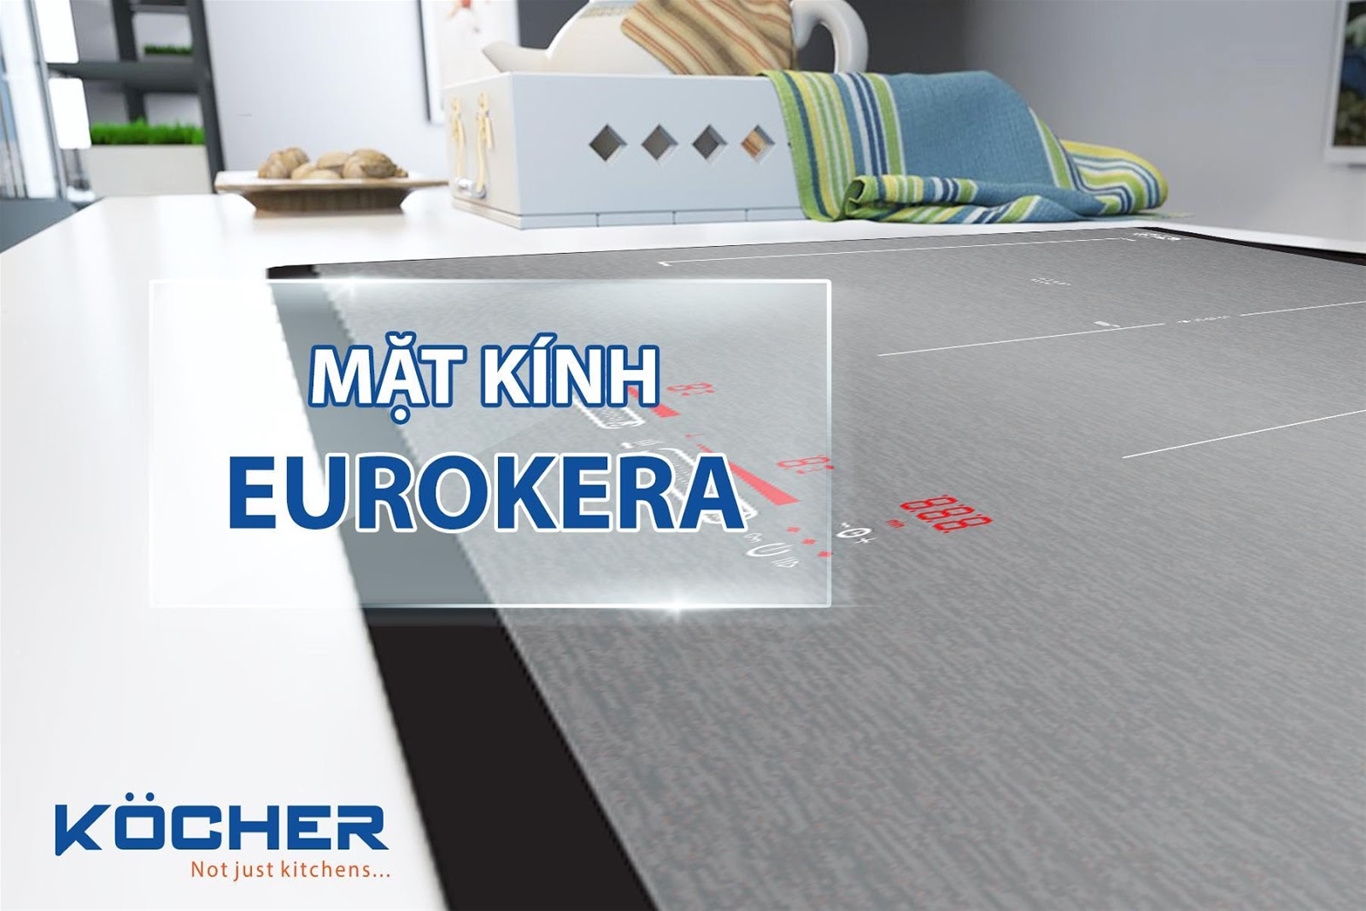 Vì sao Kocher lại lựa chọn mặt kính Eurokera - 6